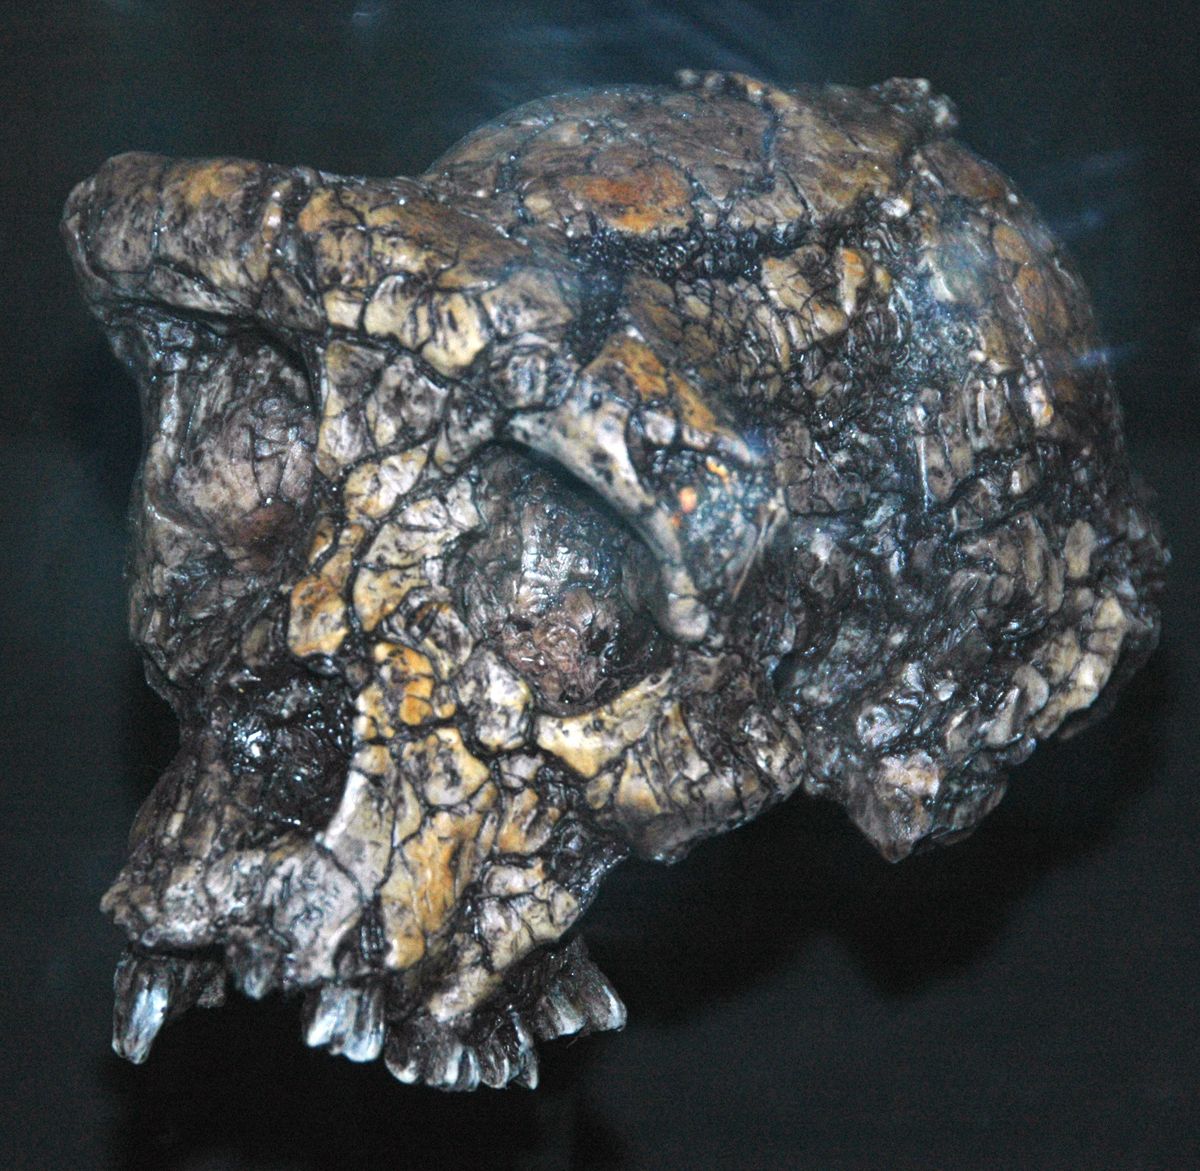 Skull of Sahelanthropus tchadensis, Djourab